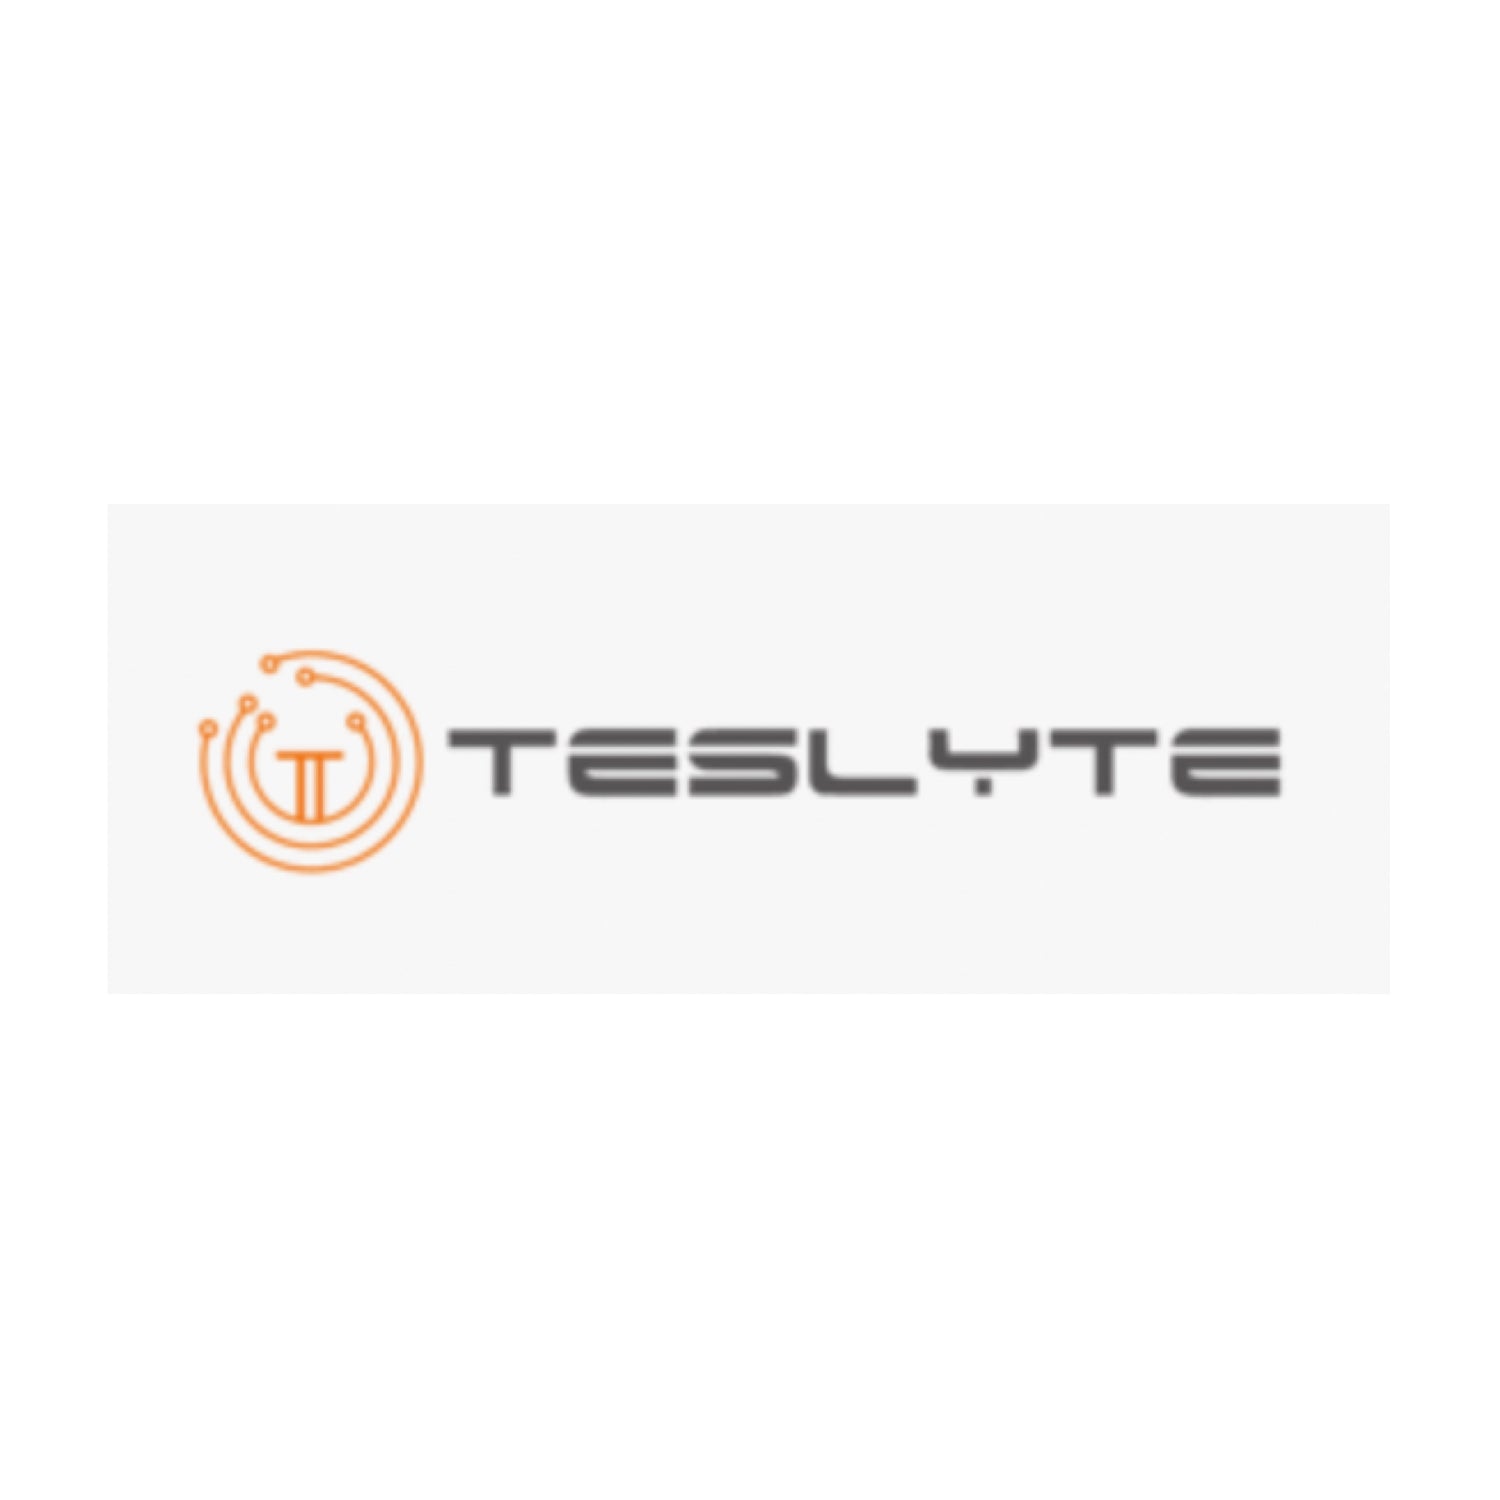 TESLYTE LLC